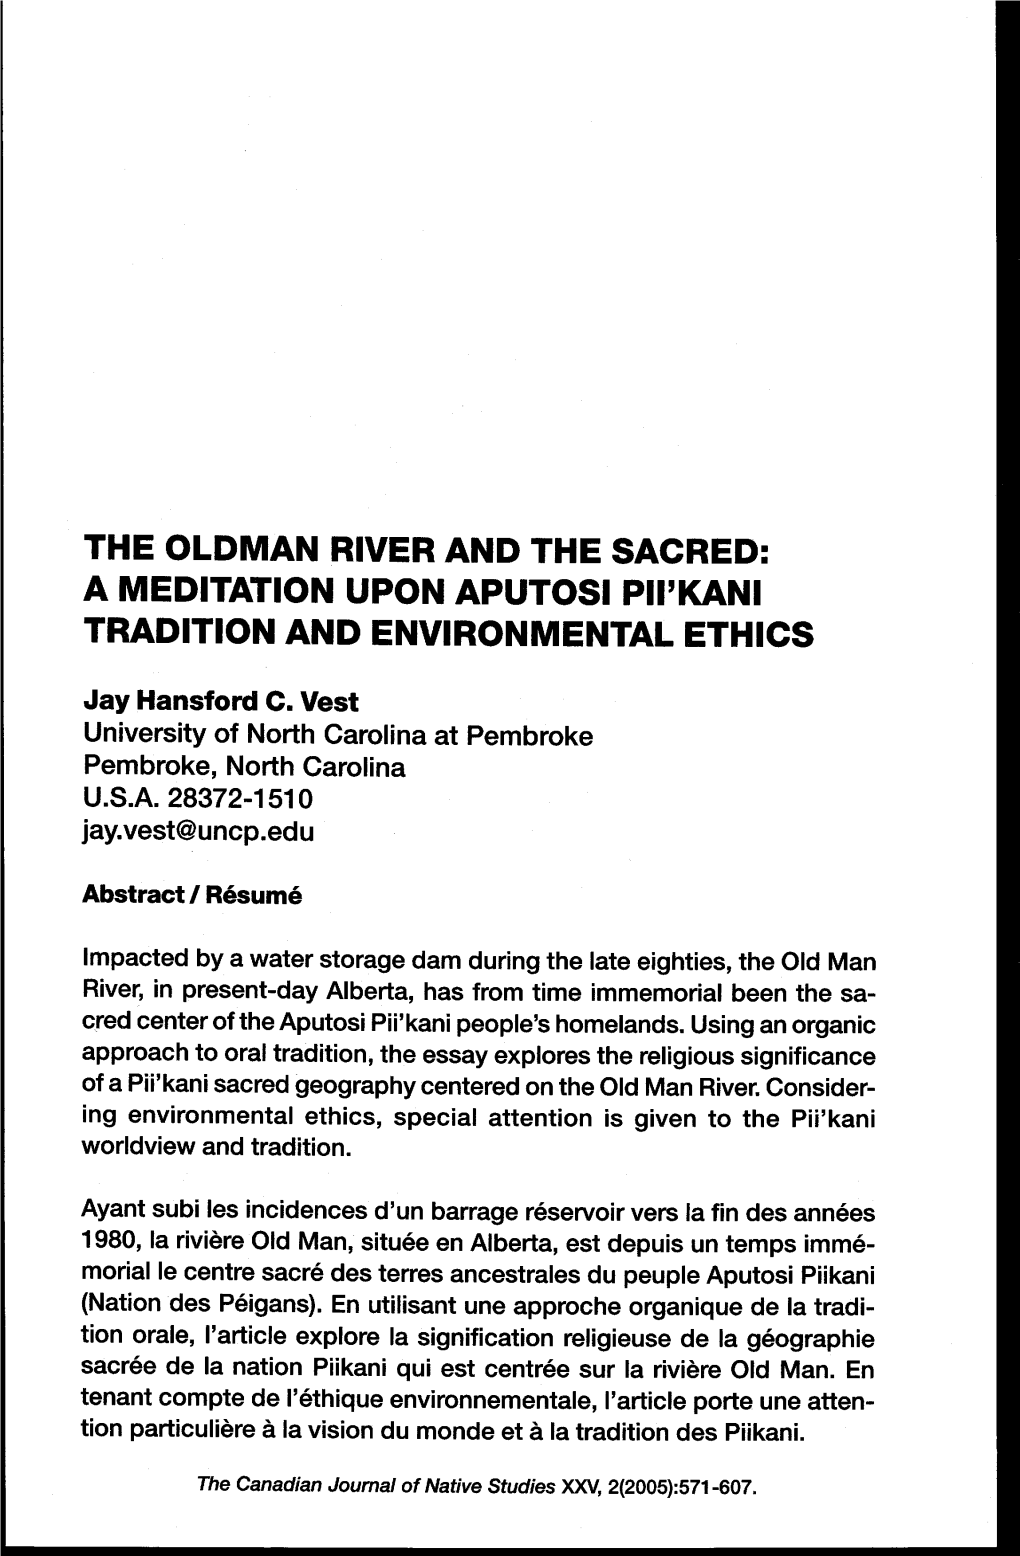 The Oldman River and the Sacred: a Meditation Upon Aputosi Pii'kani Tradition and Environmental Ethics